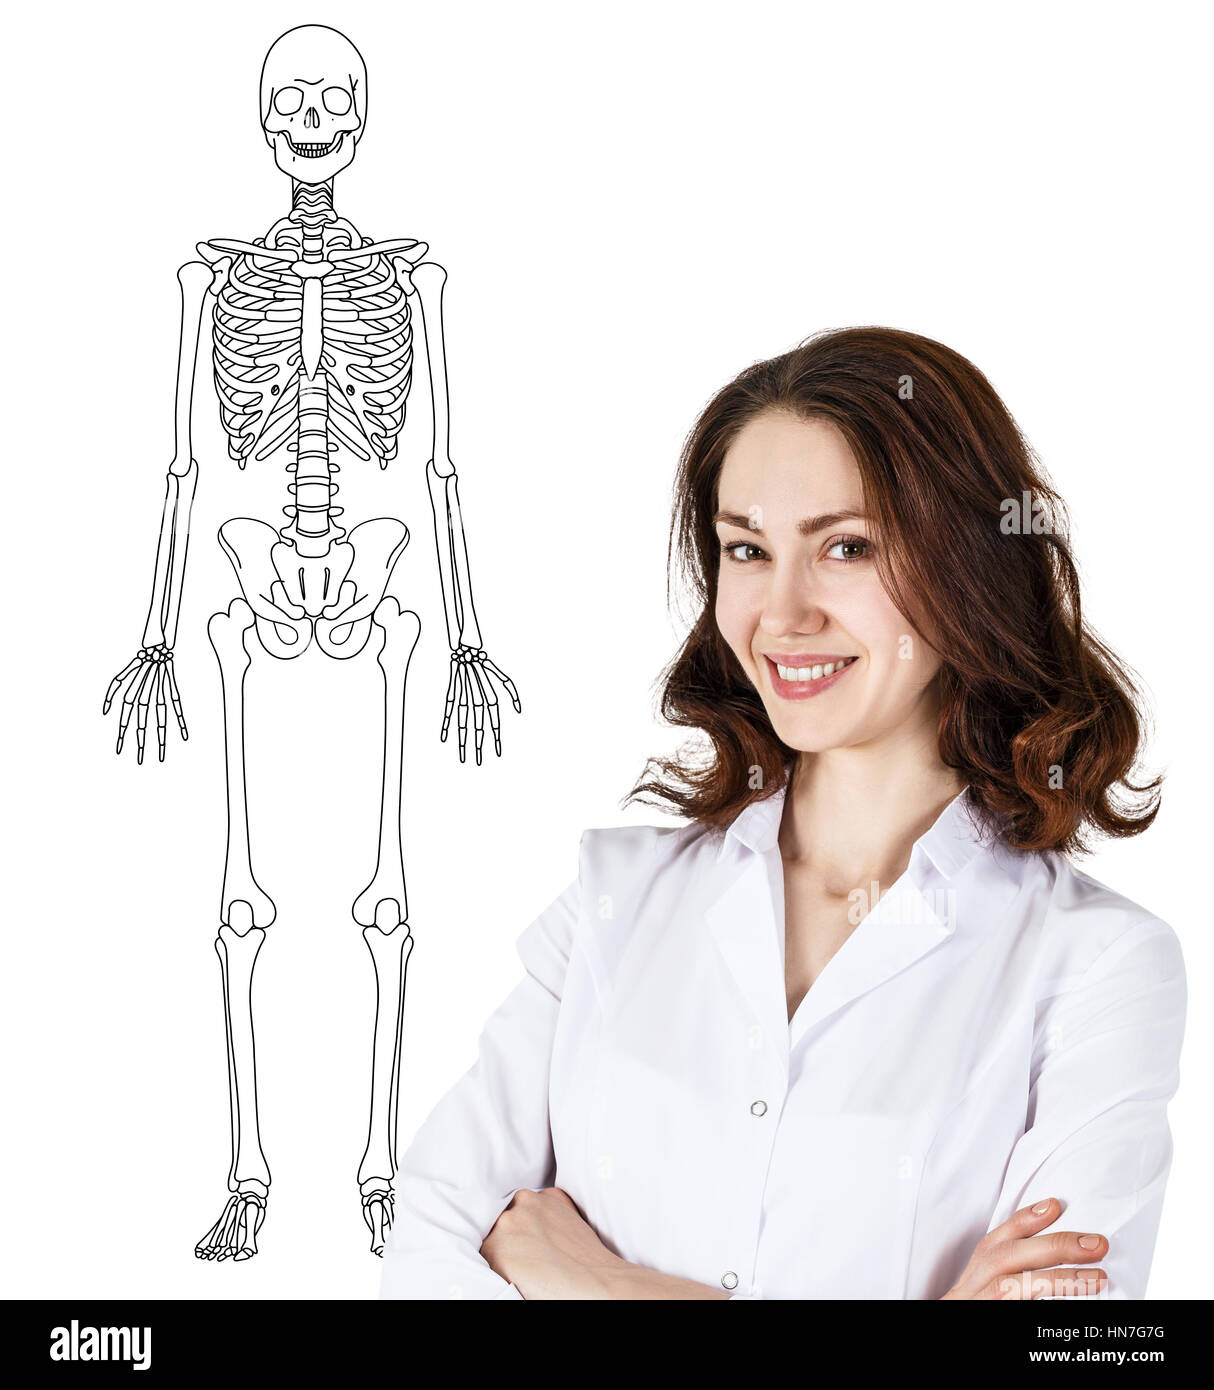 Médecin femme debout près de dimensions squelette humain Banque D'Images